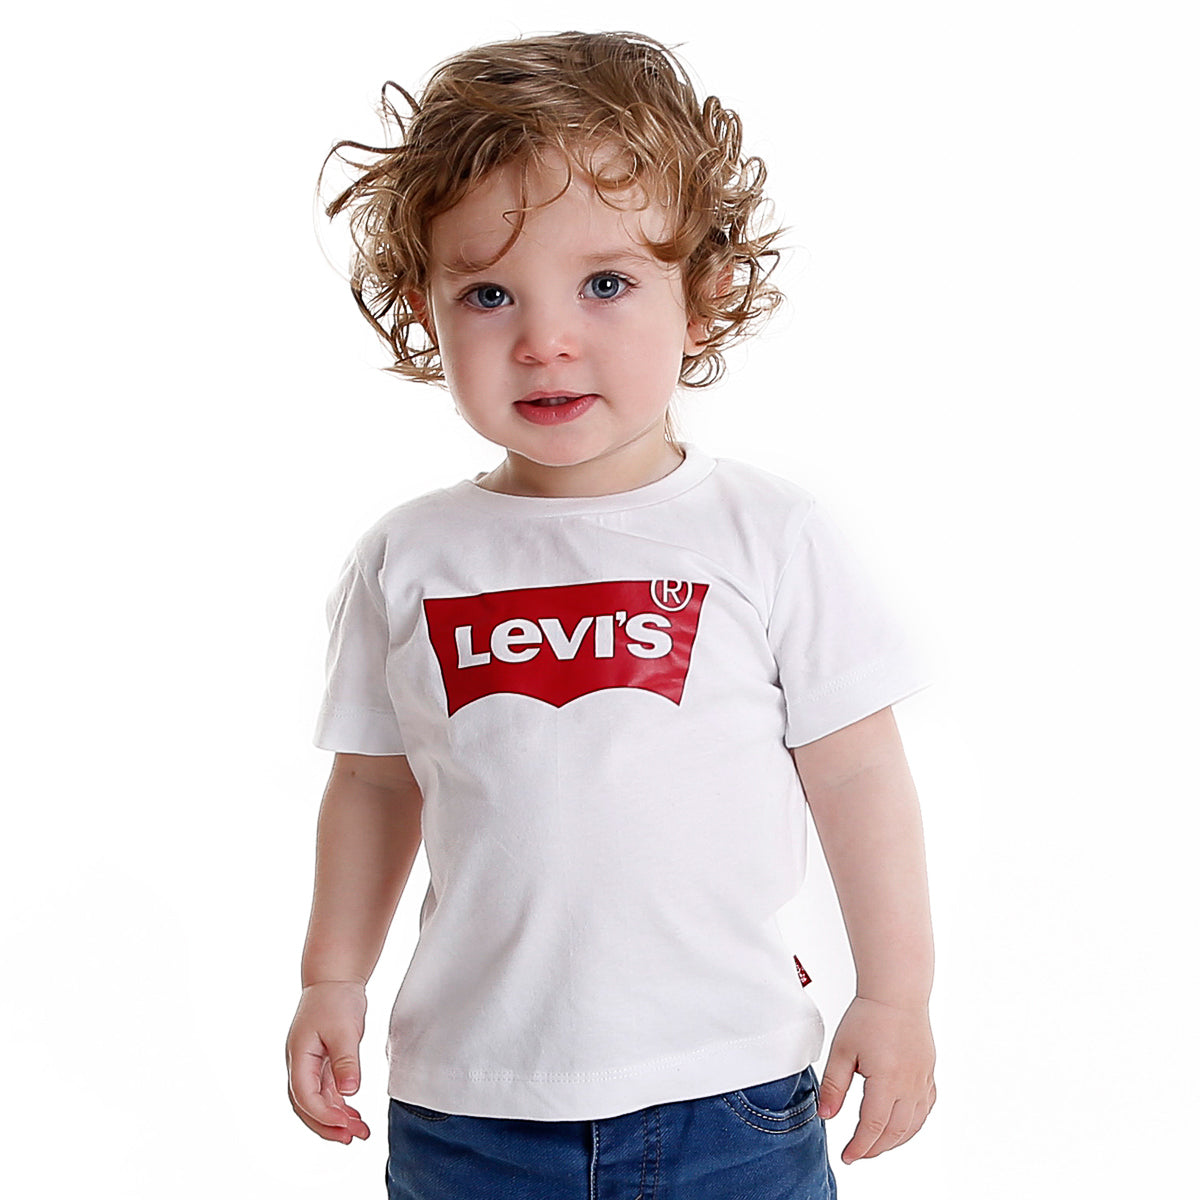 חולצת טי שרט LEVI'S לוגו קלאסי לילדים